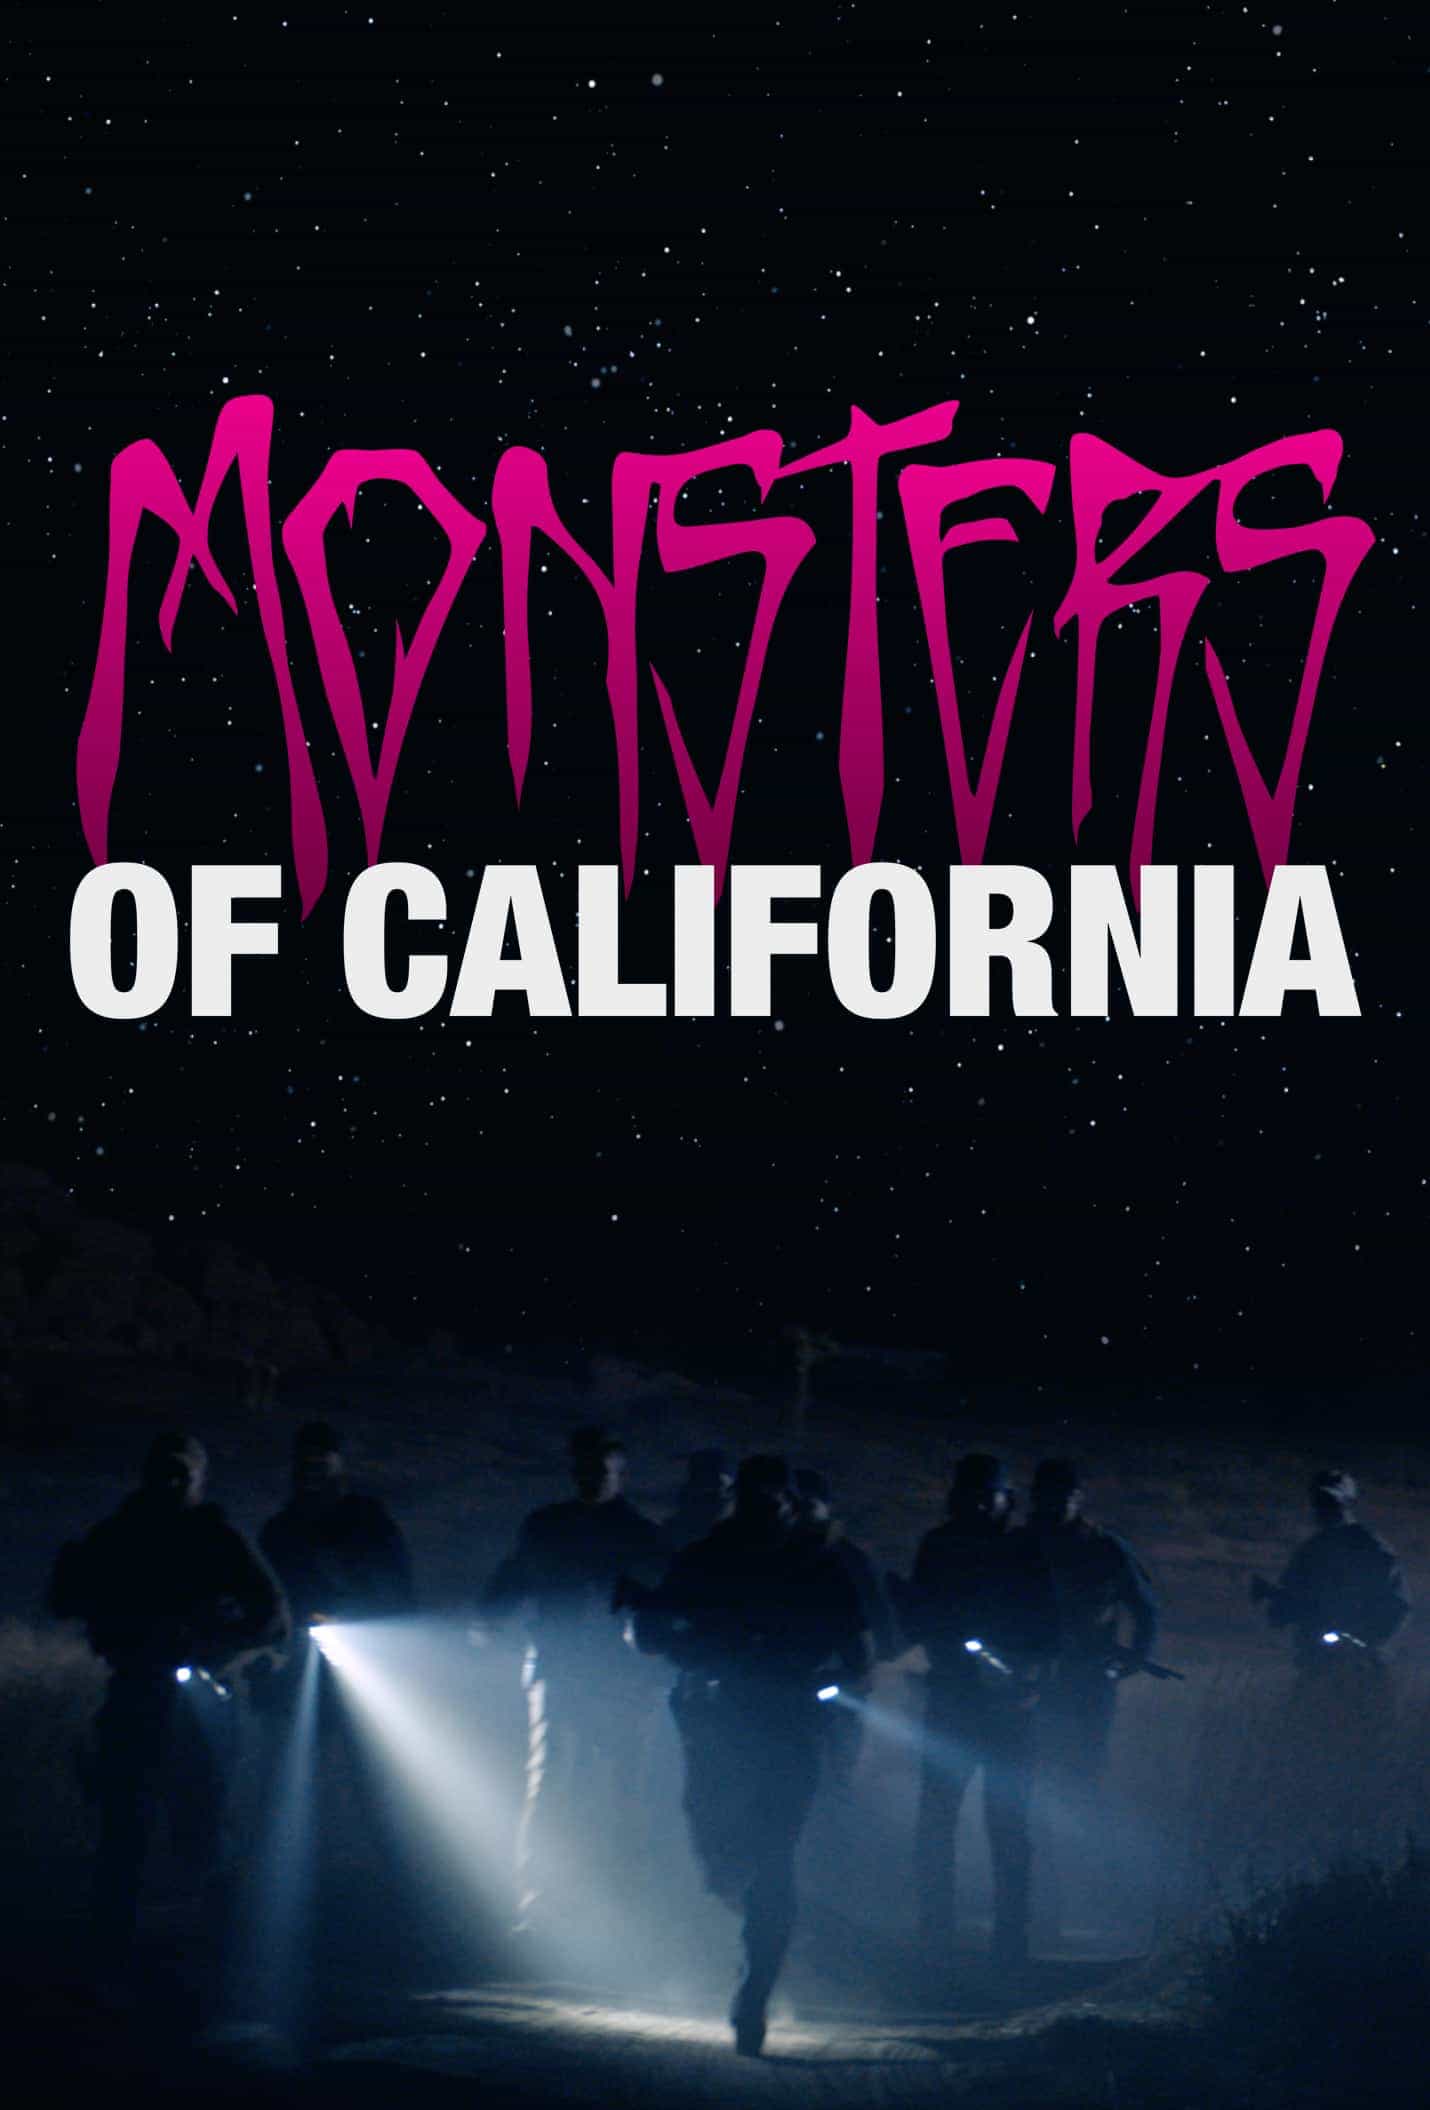 Watch: Tom DeLonge's Directorial Debut 'Monsters Of California